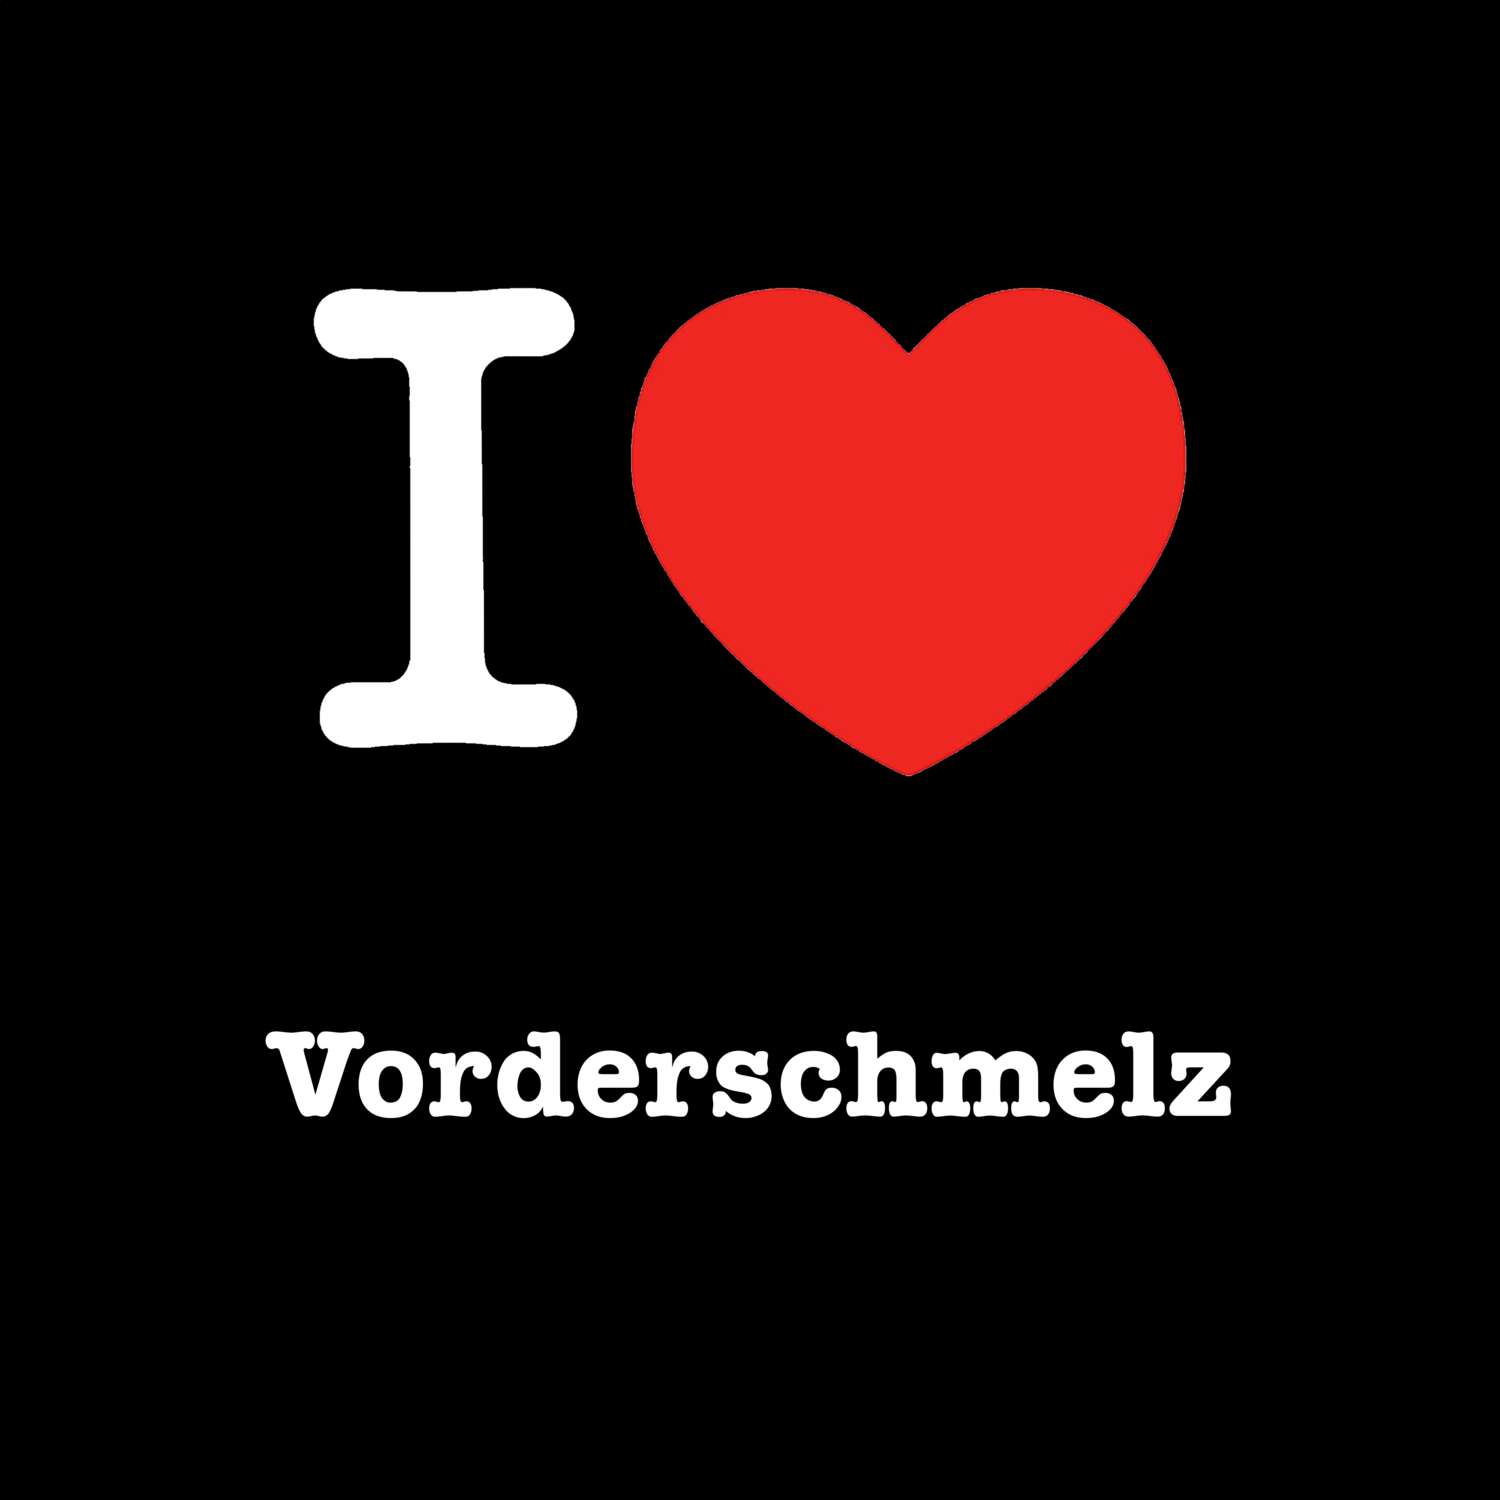 Vorderschmelz T-Shirt »I love«